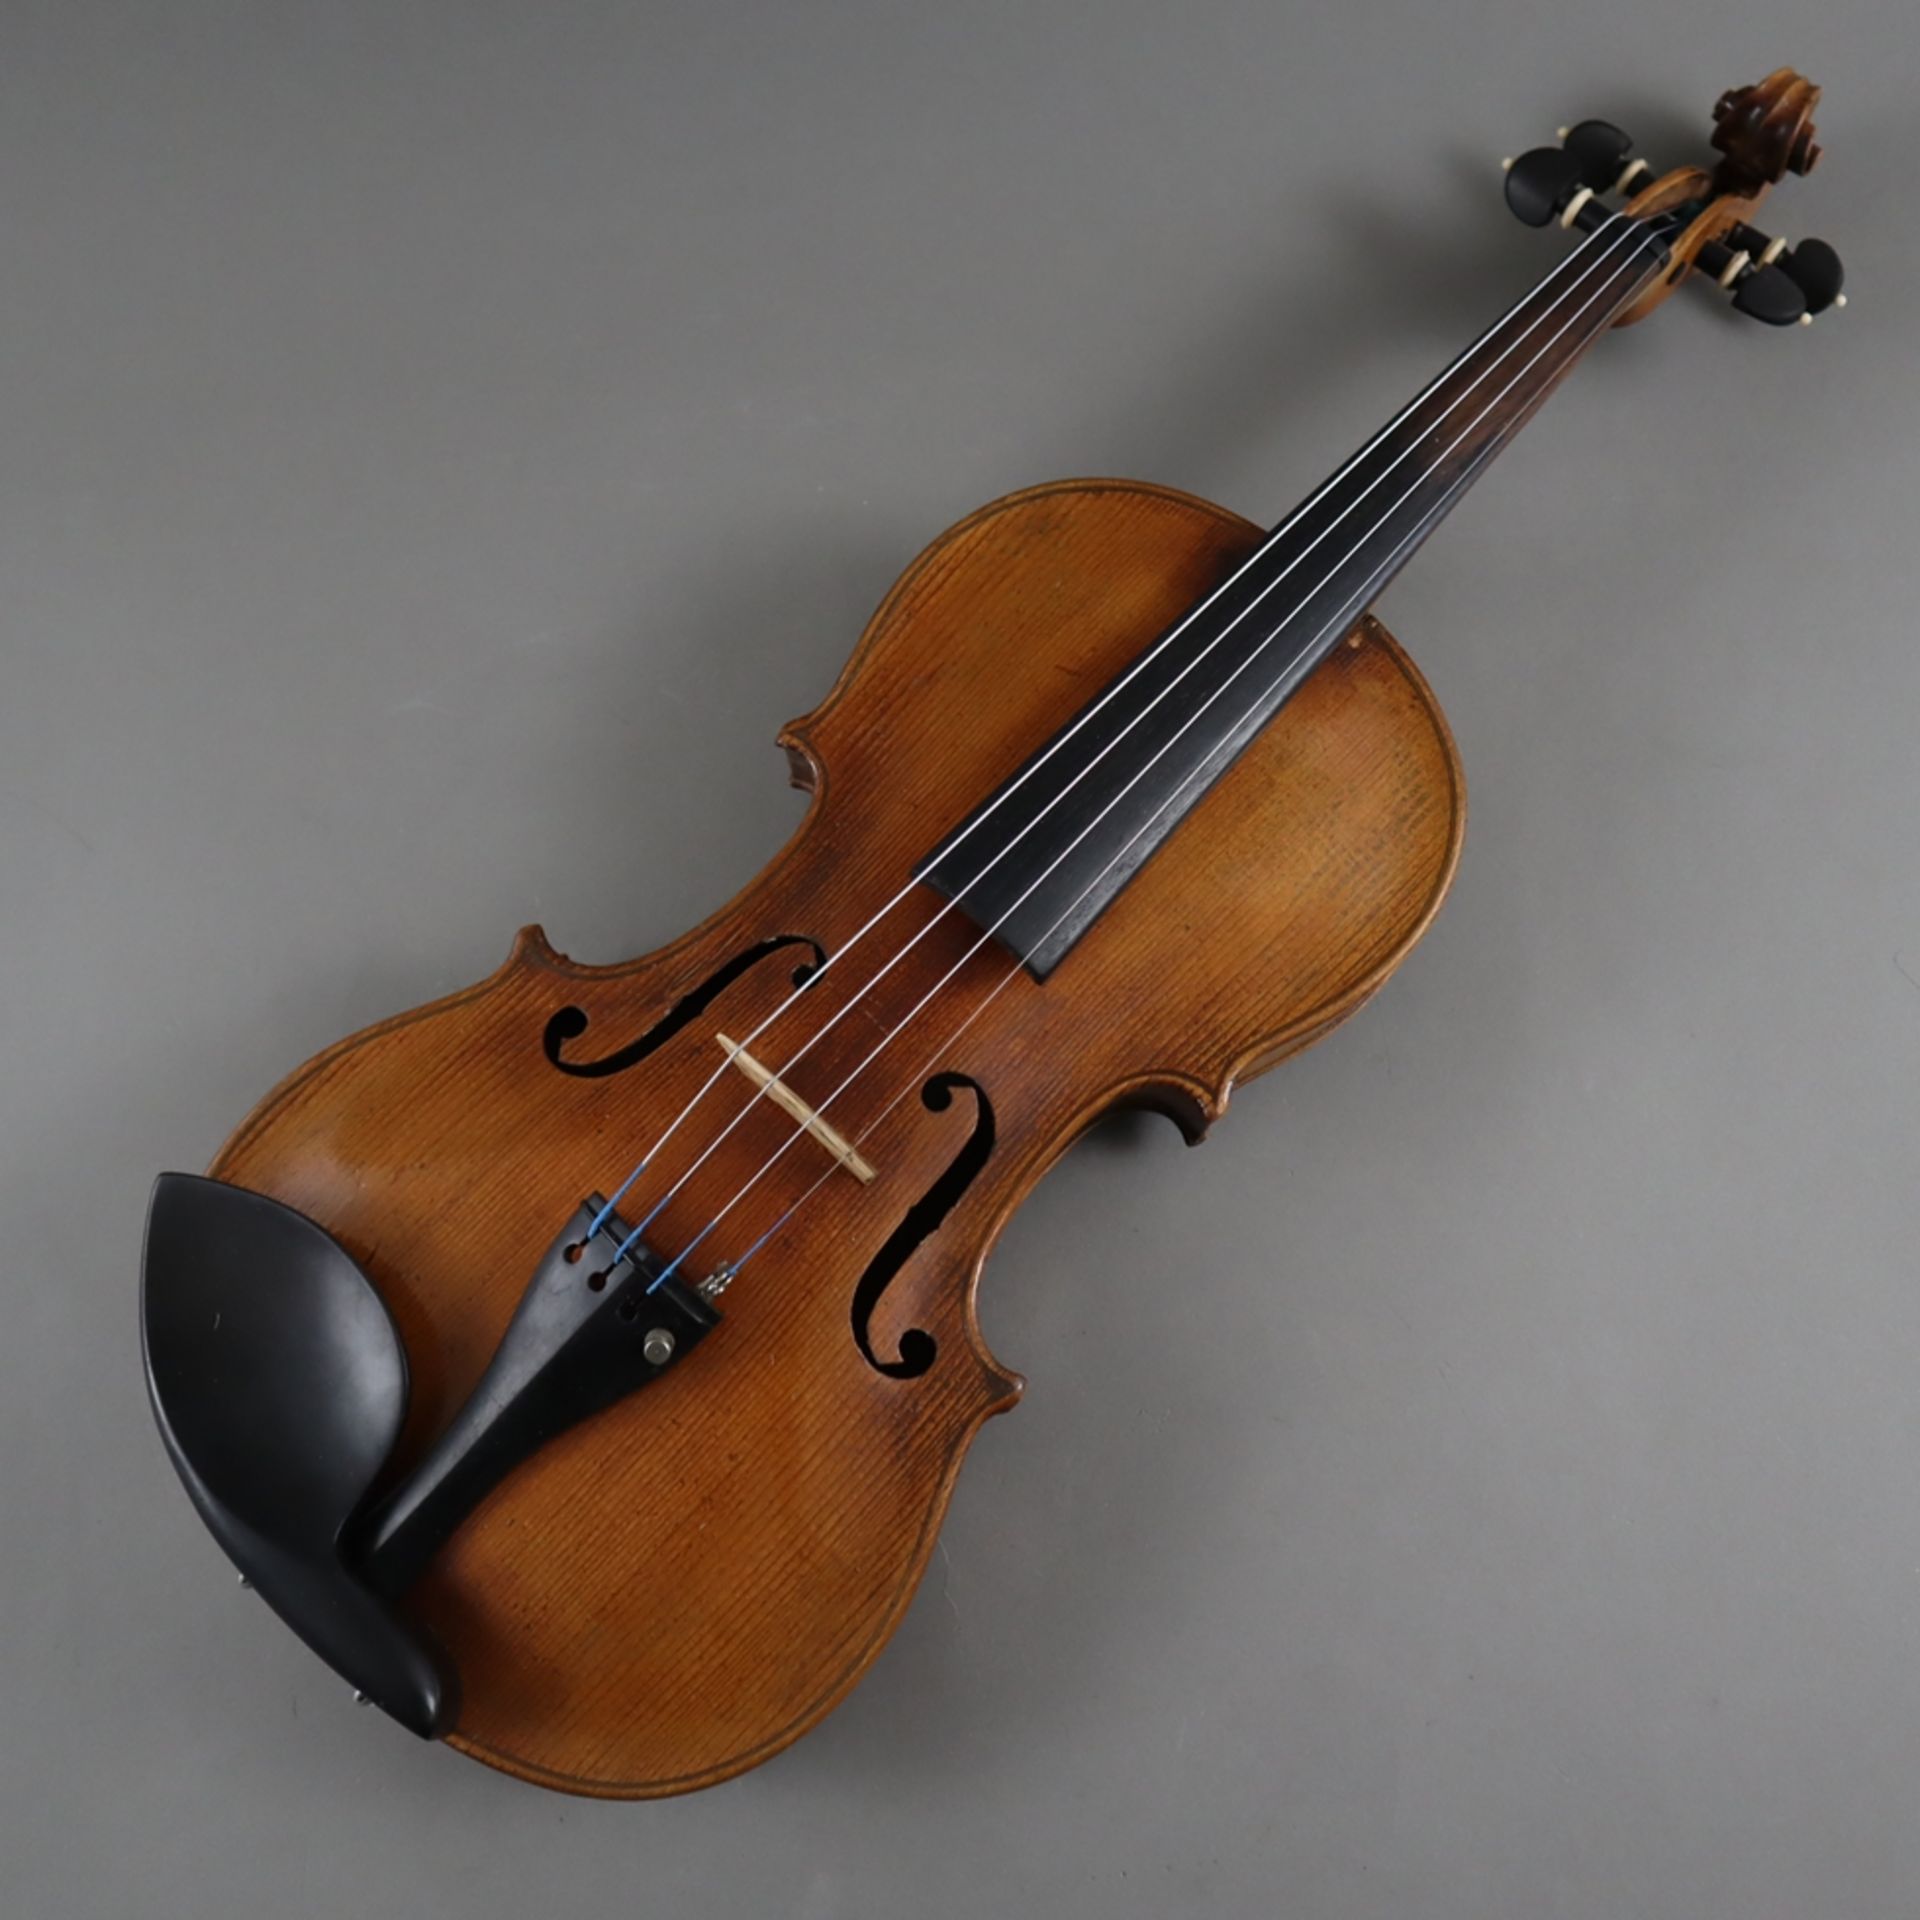 Schmale Geige - Italien, auf dem Faksimile-Etikett bezeichnet "Paolo Leonori / Roma 1949", einteili